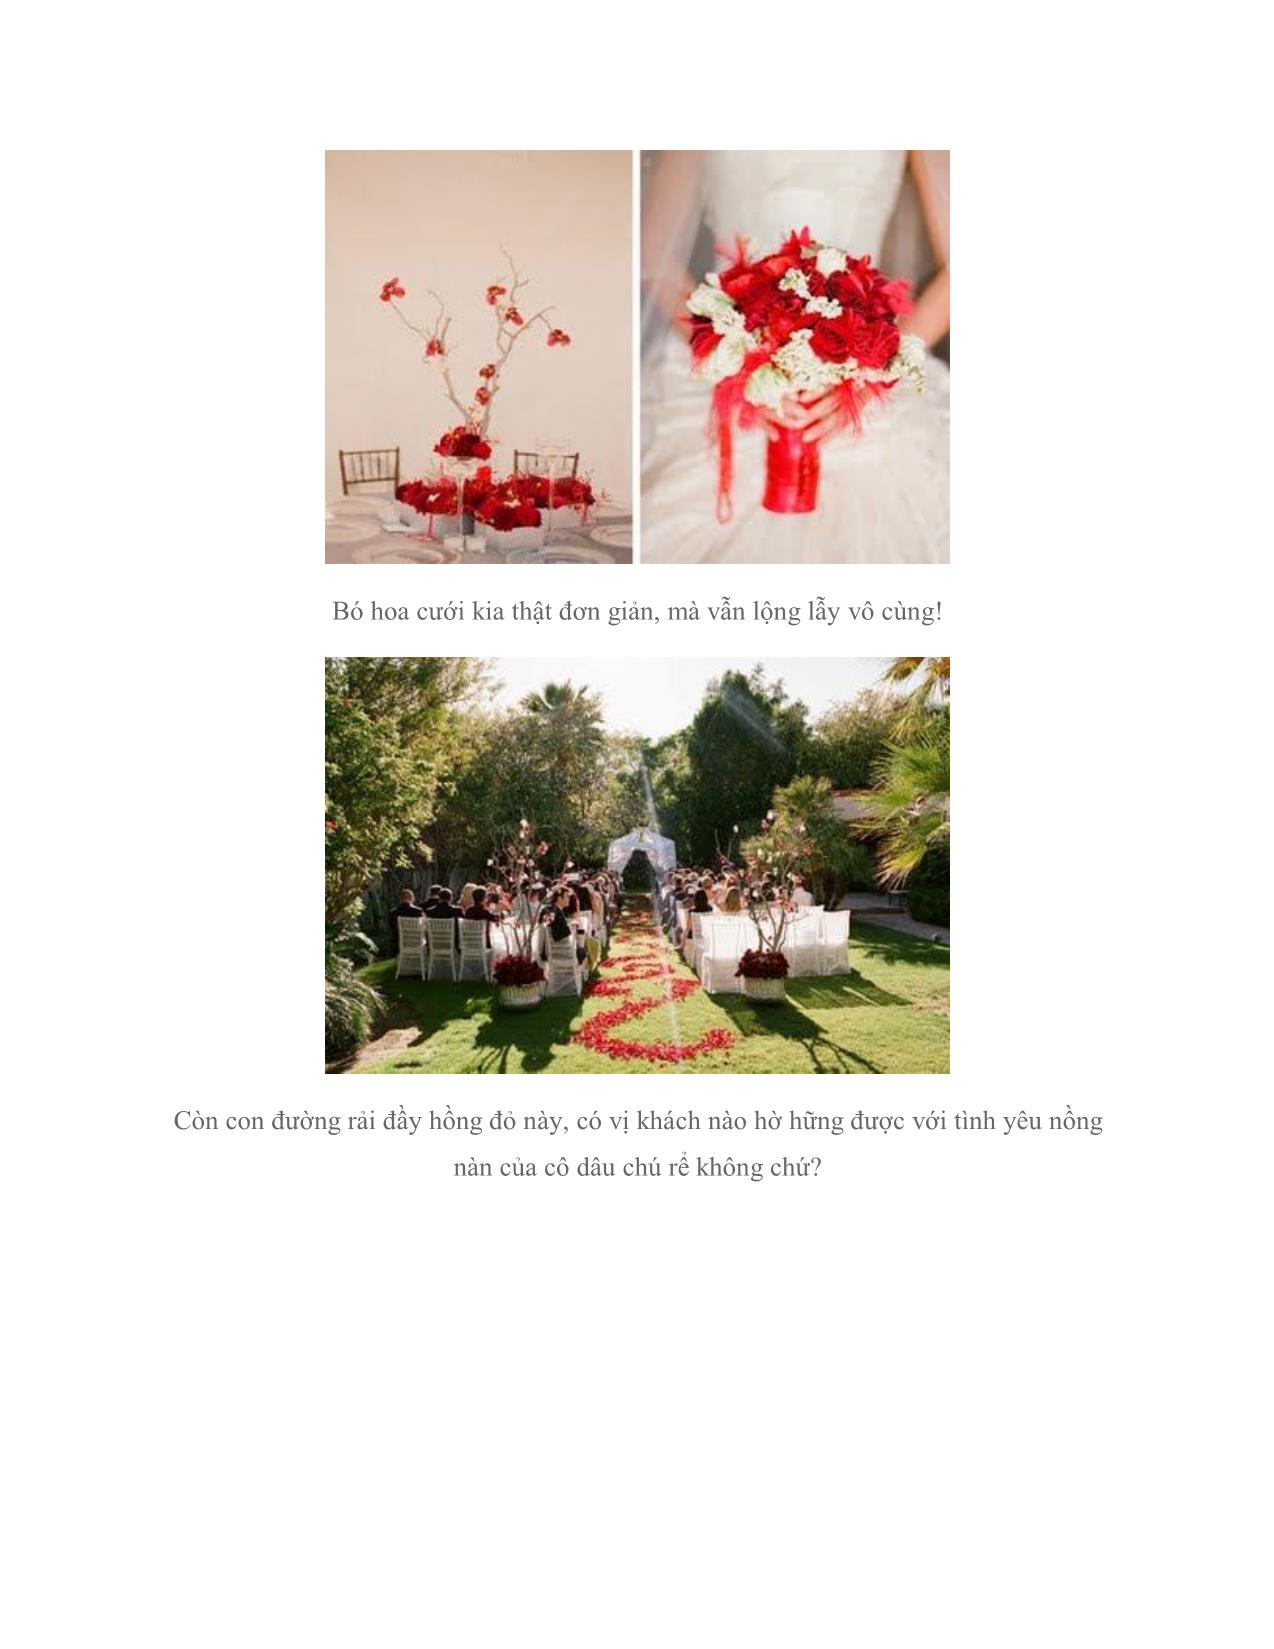 Đám cưới Đỏ rực đầy mê hoặc trang 2